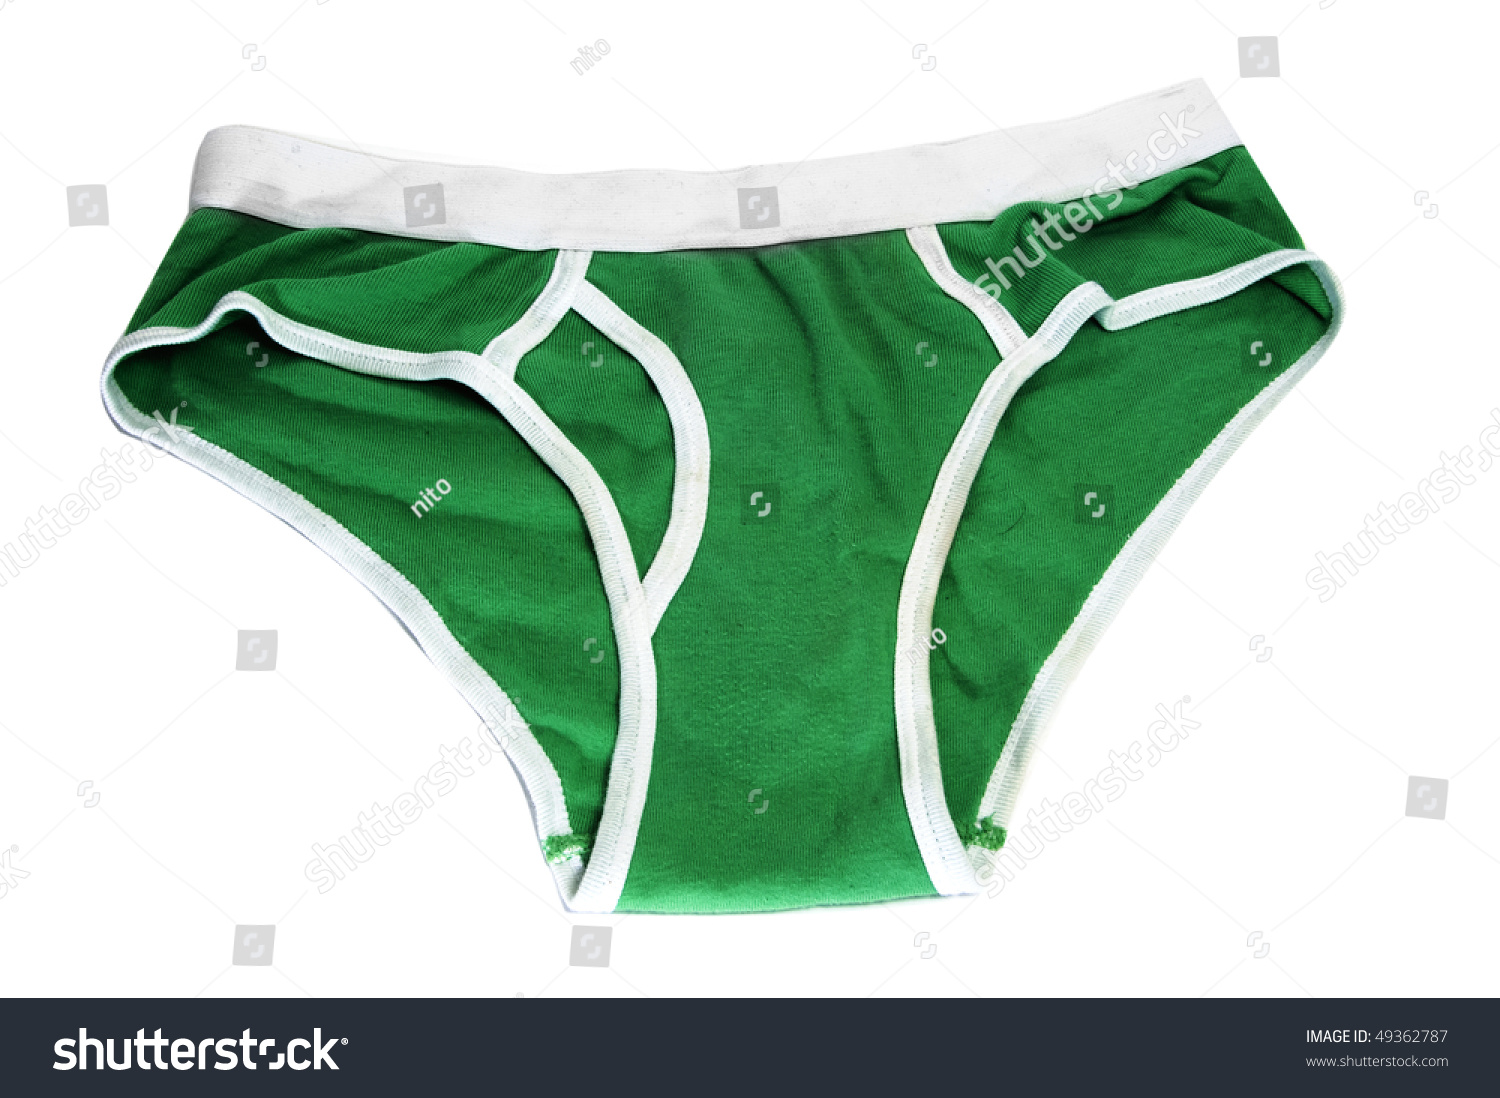 mens underwear clipart free - photo #48